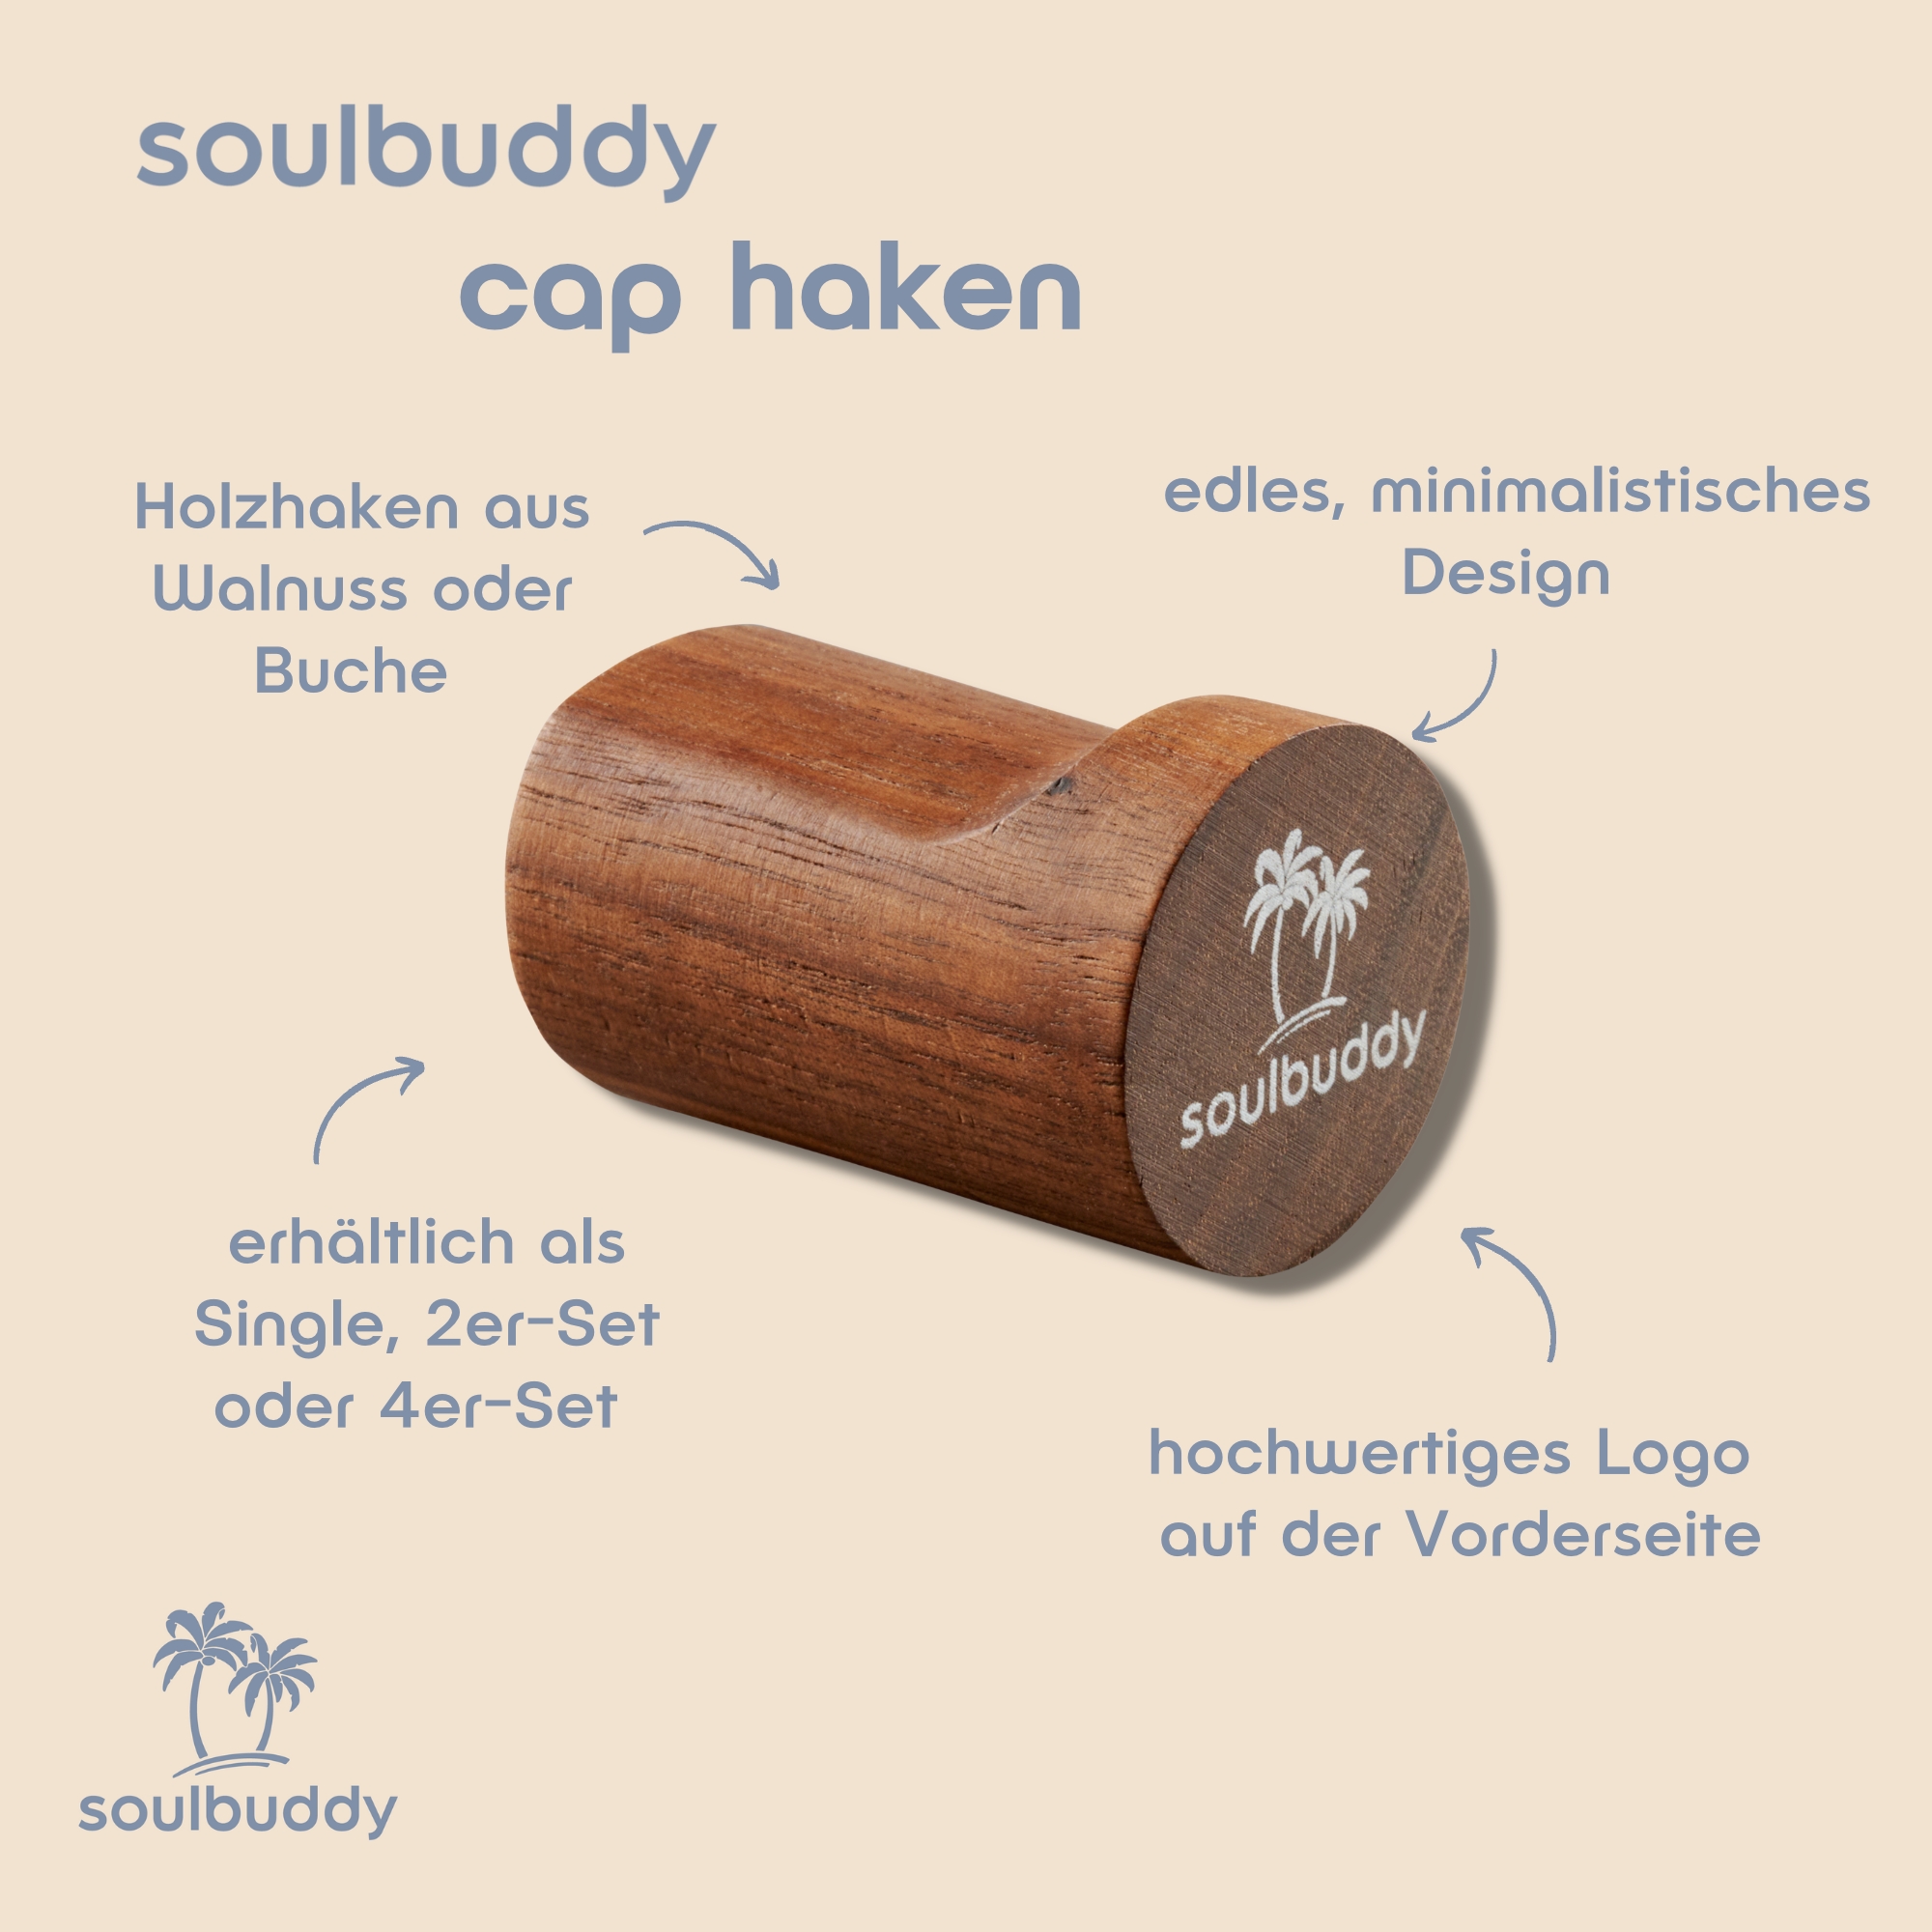 Soulbuddy Cap Haken mit Detailbeschreibung